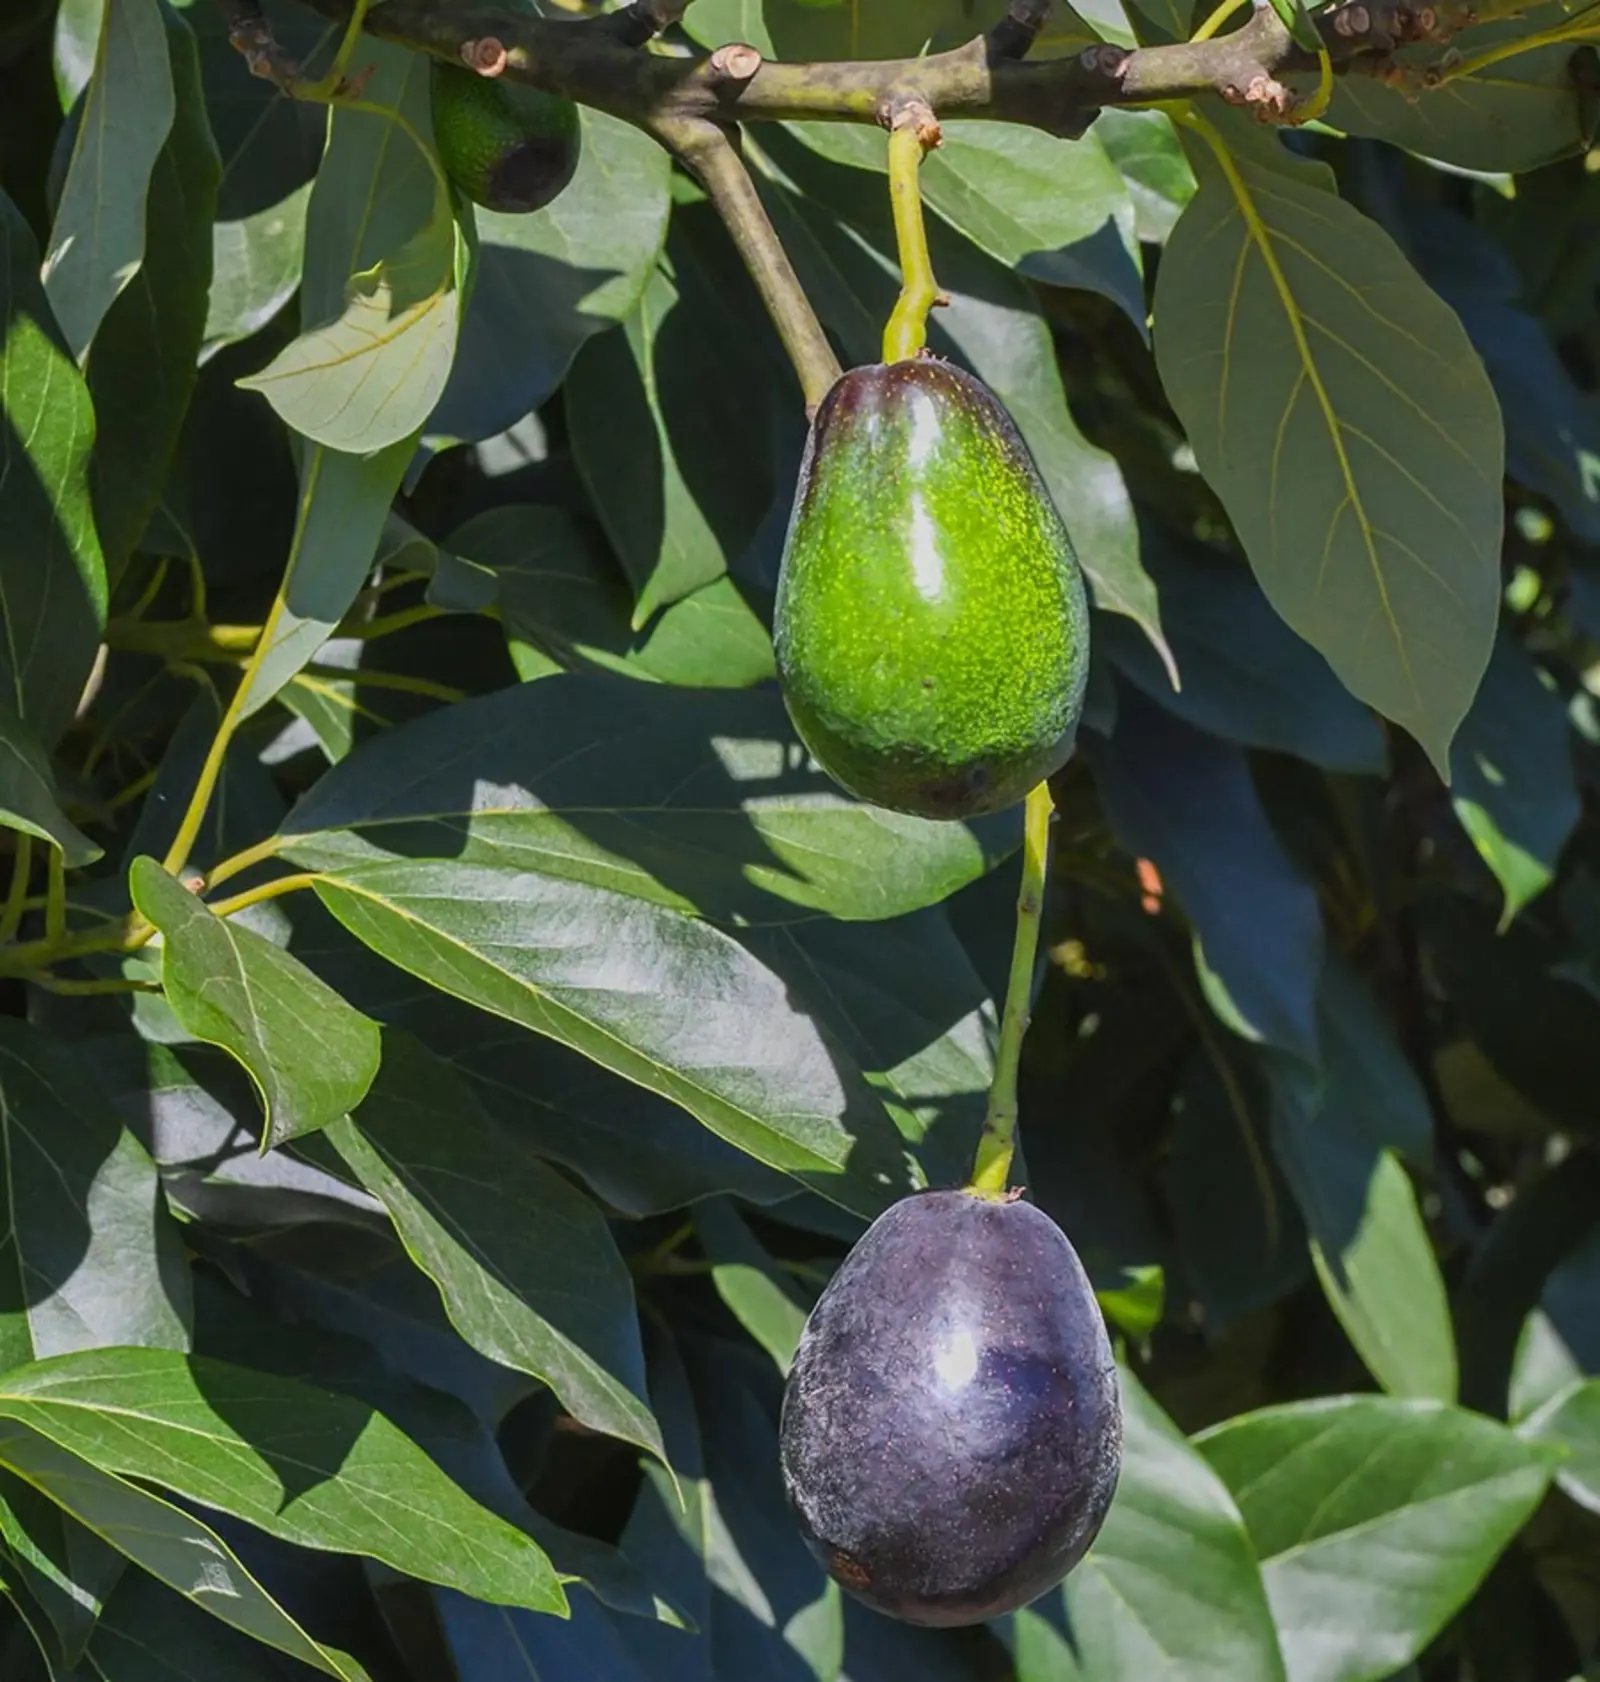 A green avocado hangs above a black avocado on a tree.